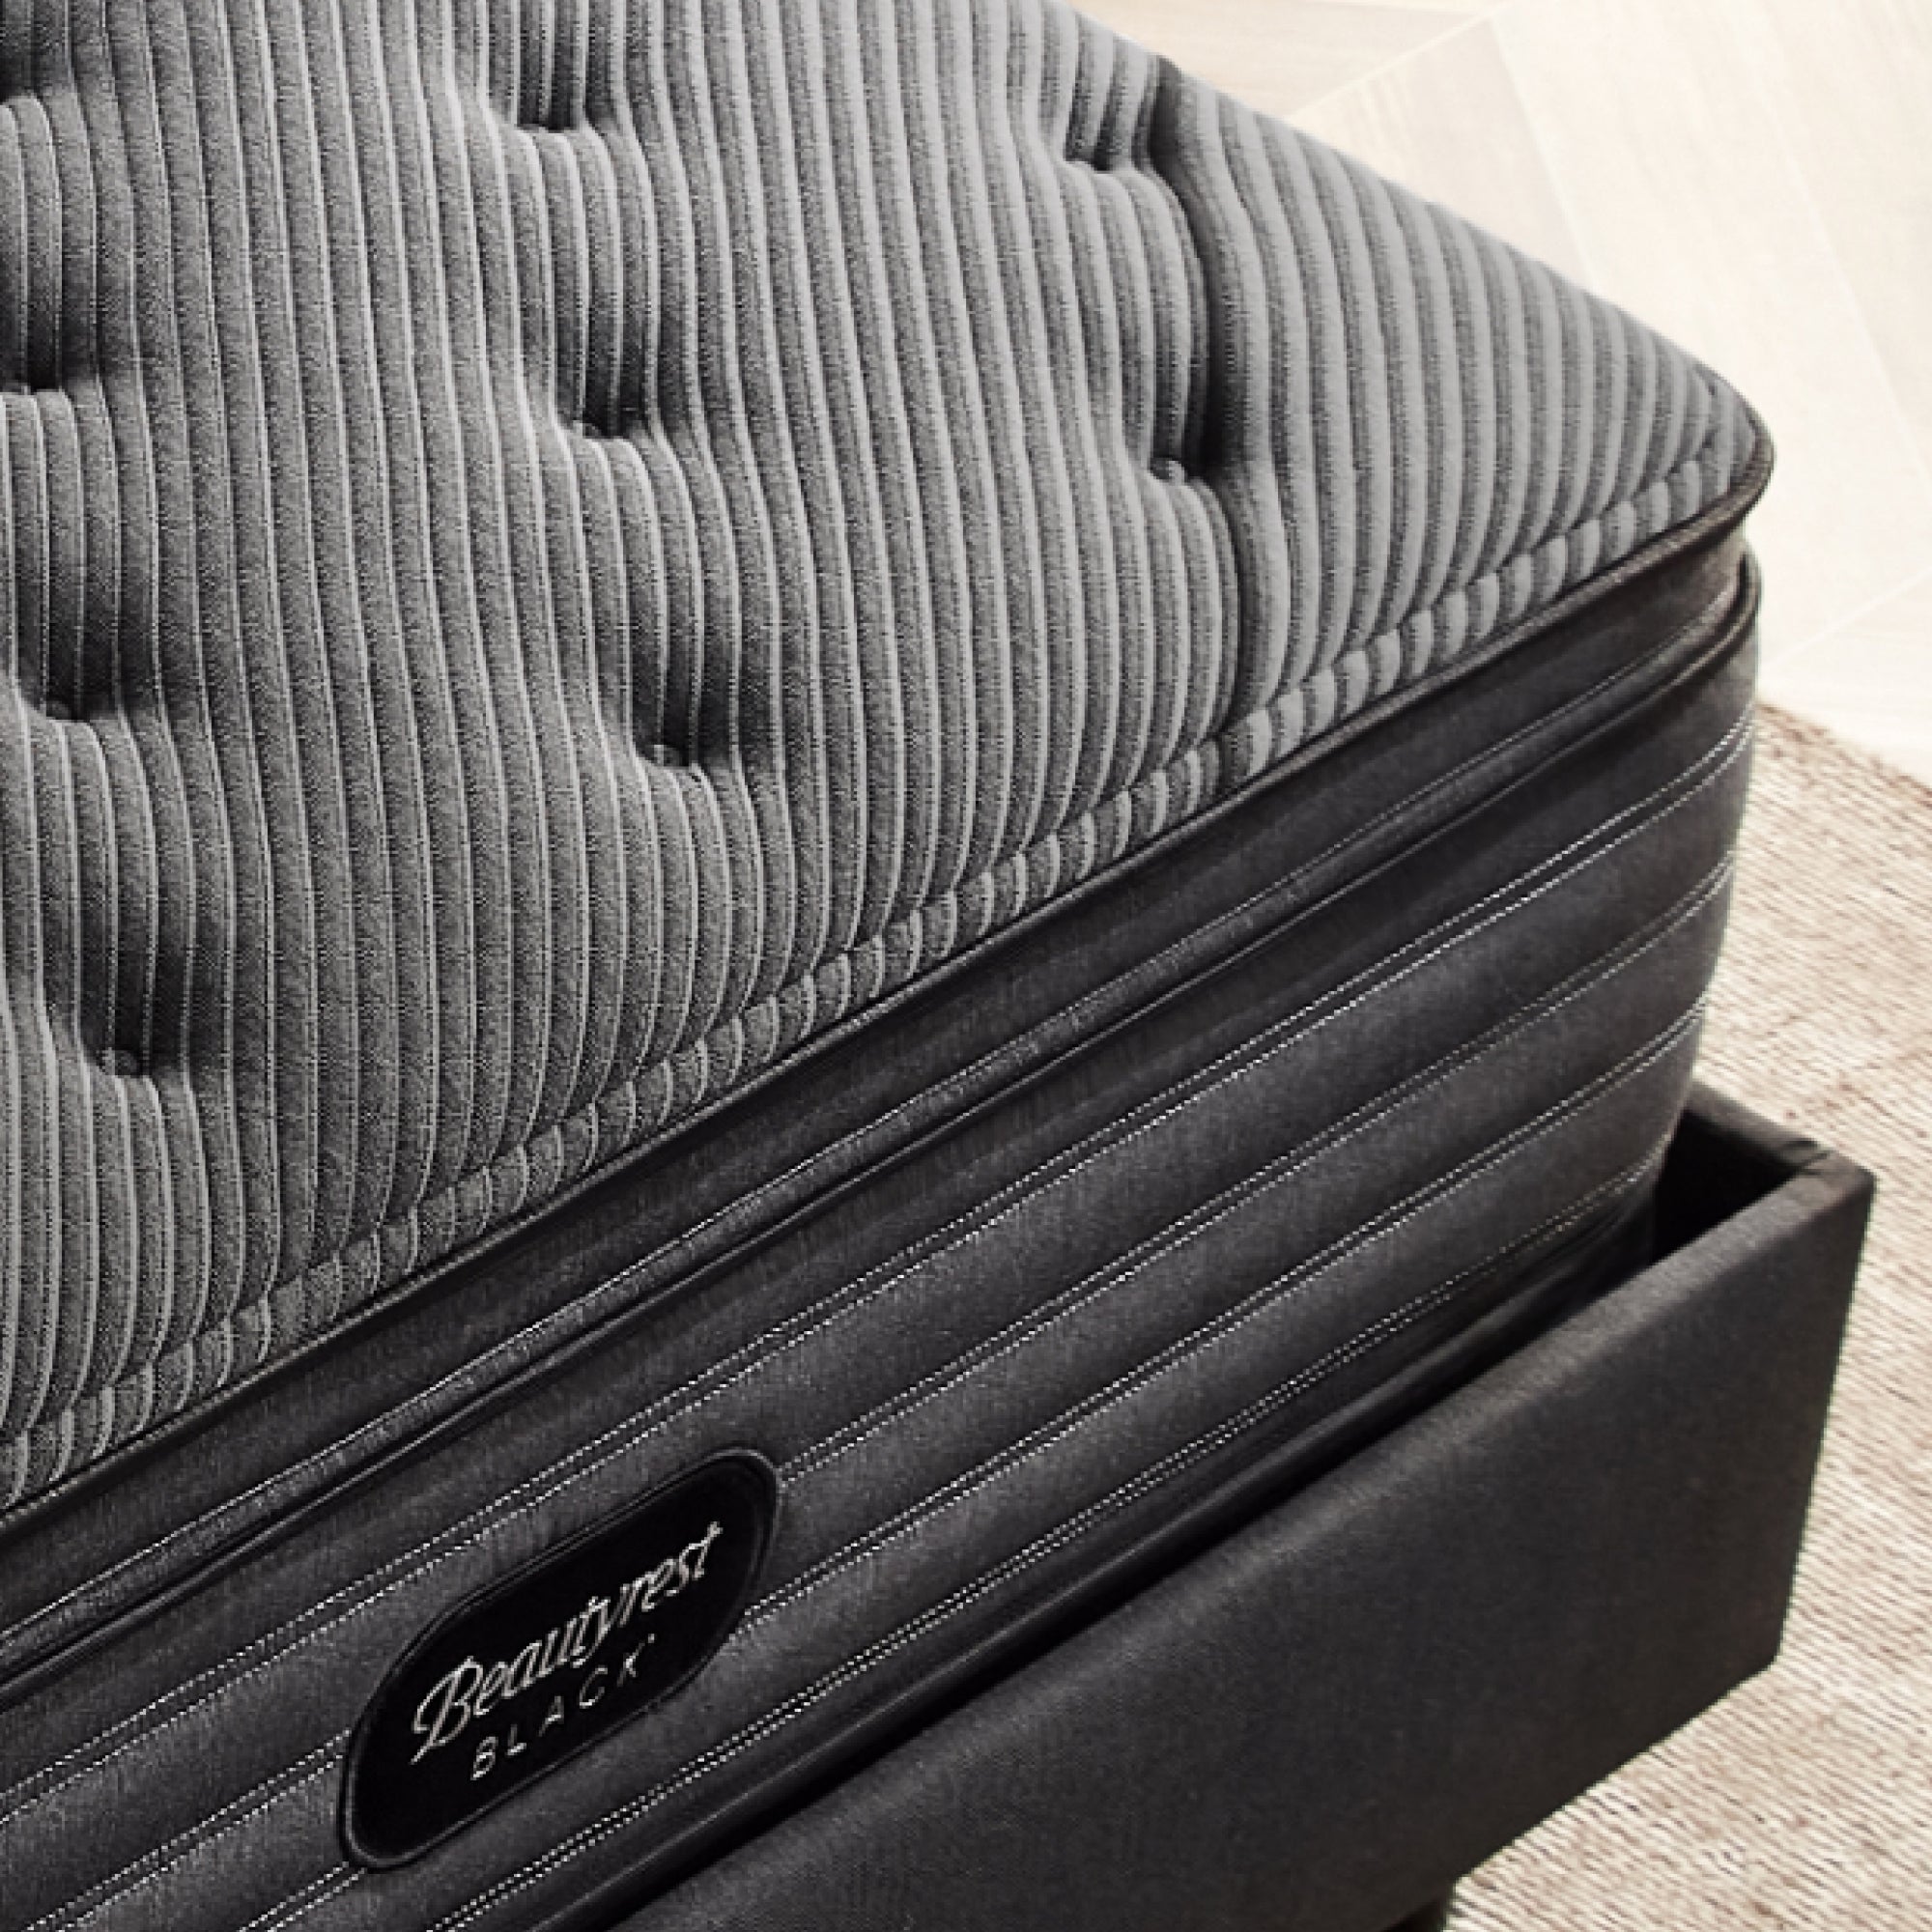 Corner view of the Beautyrest black l-class mattress||series: enhanced l-class || feel: plush pillow top